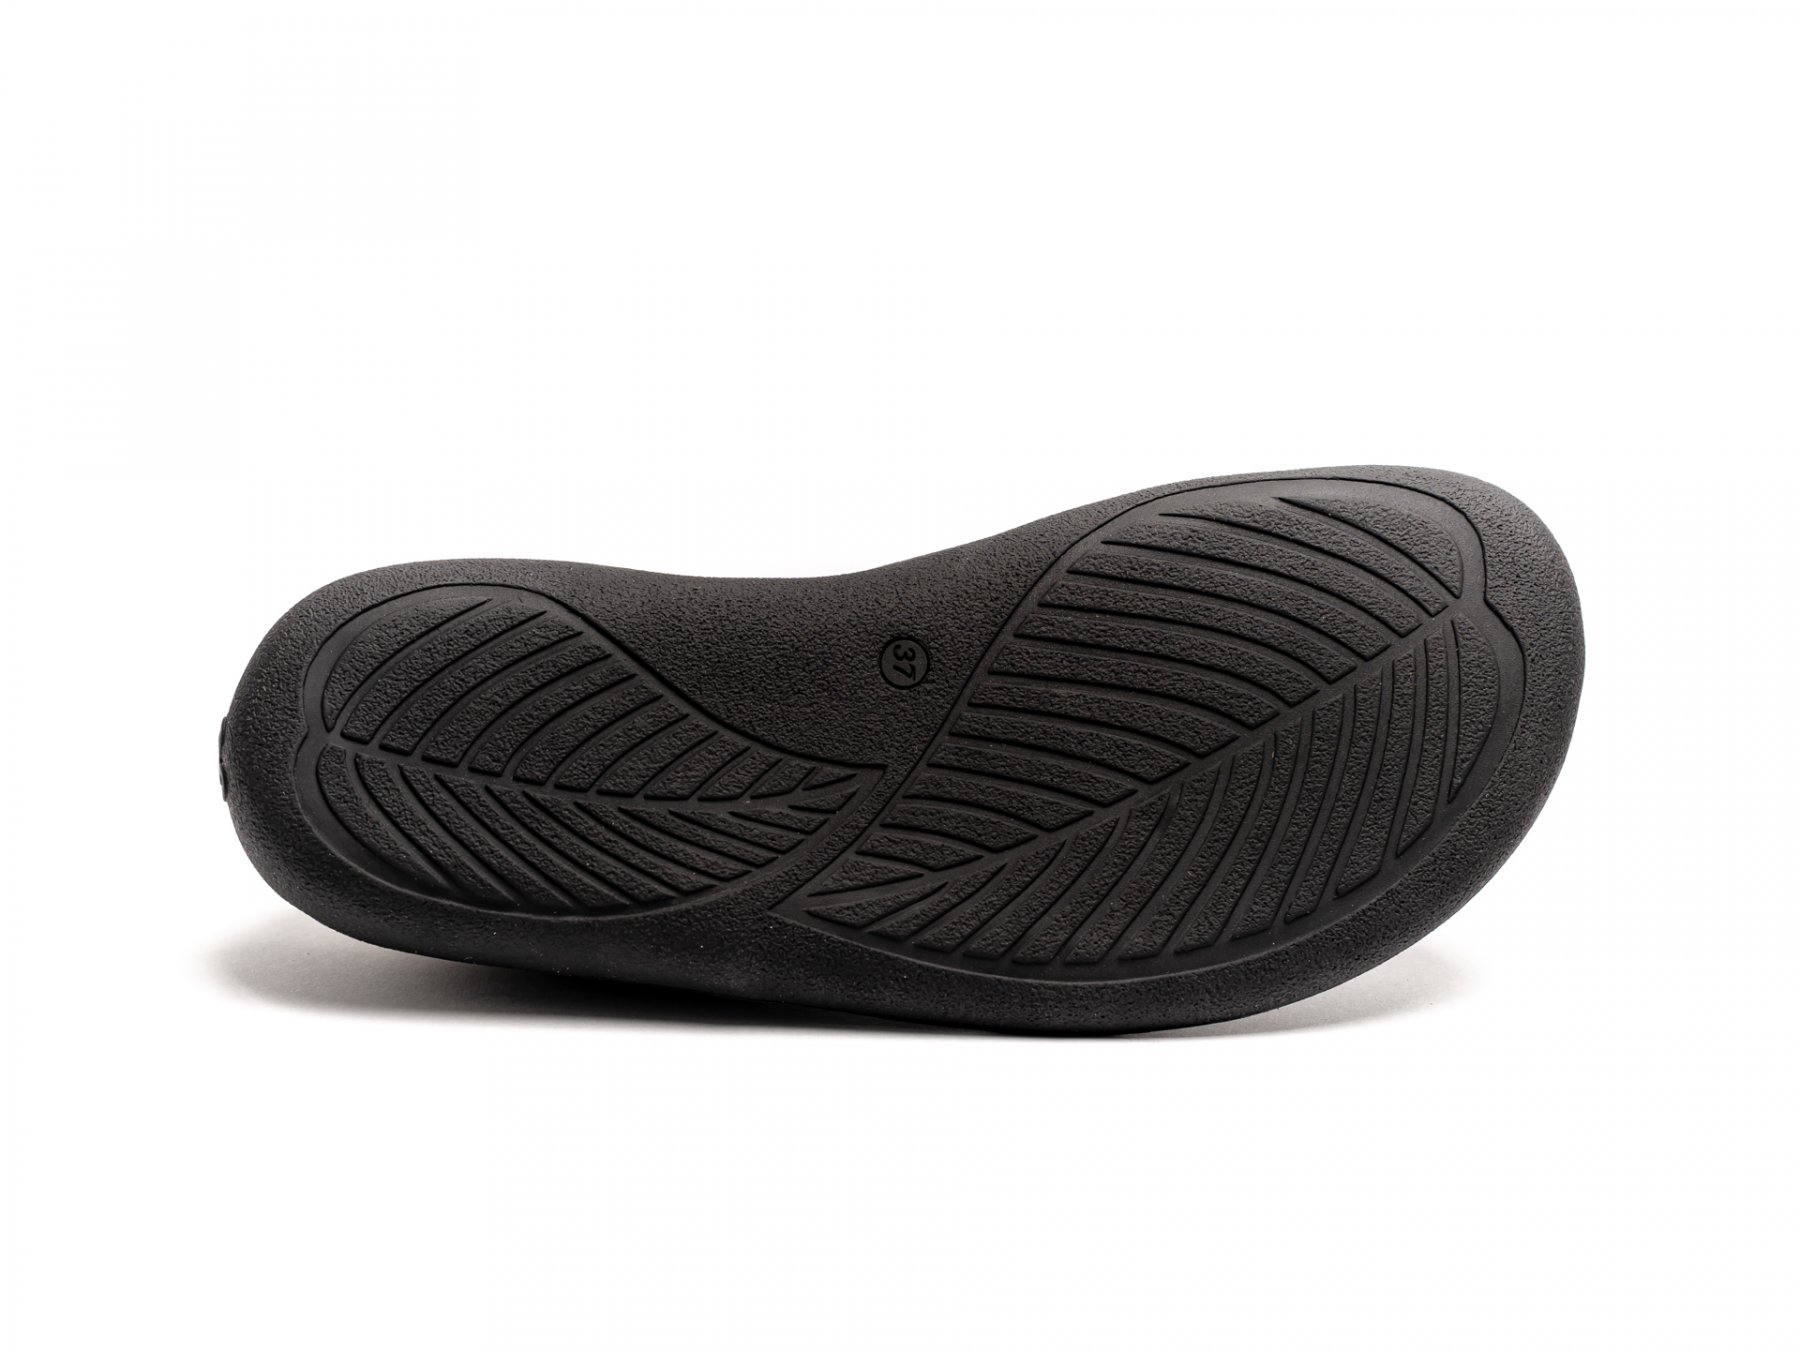 Niet meer geldig Ontstaan aansporing Barefoot Sneakers - Be Lenka Champ 2.0 - All Black | Be Lenka